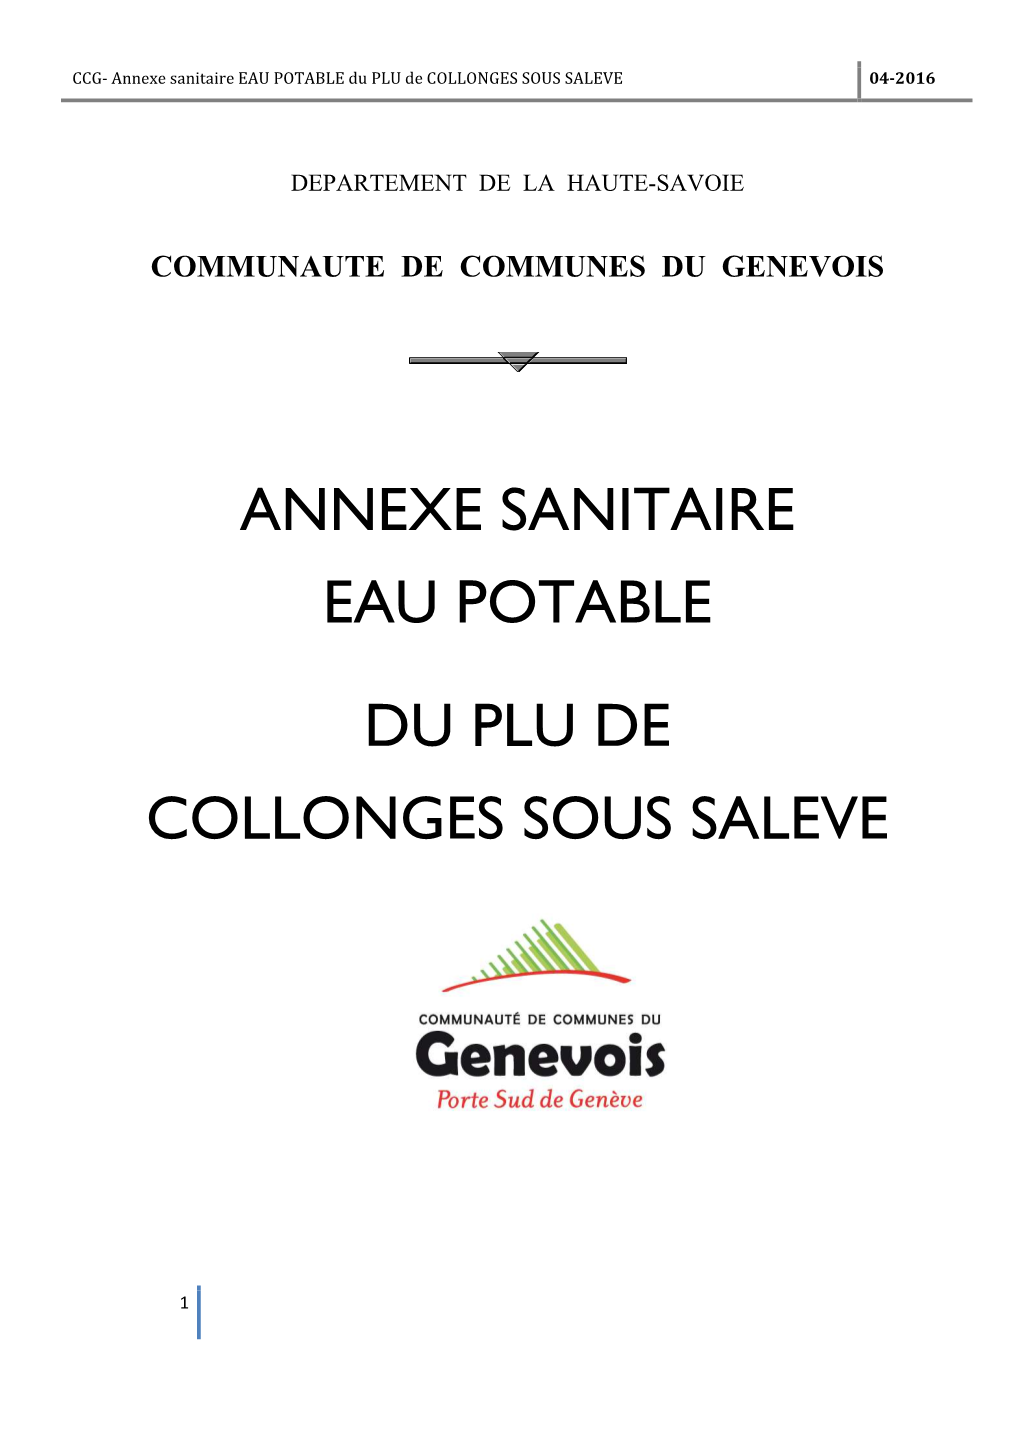 Annexe Sanitaire EAU POTABLE Du PLU De COLLONGES SOUS SALEVE 04-2016